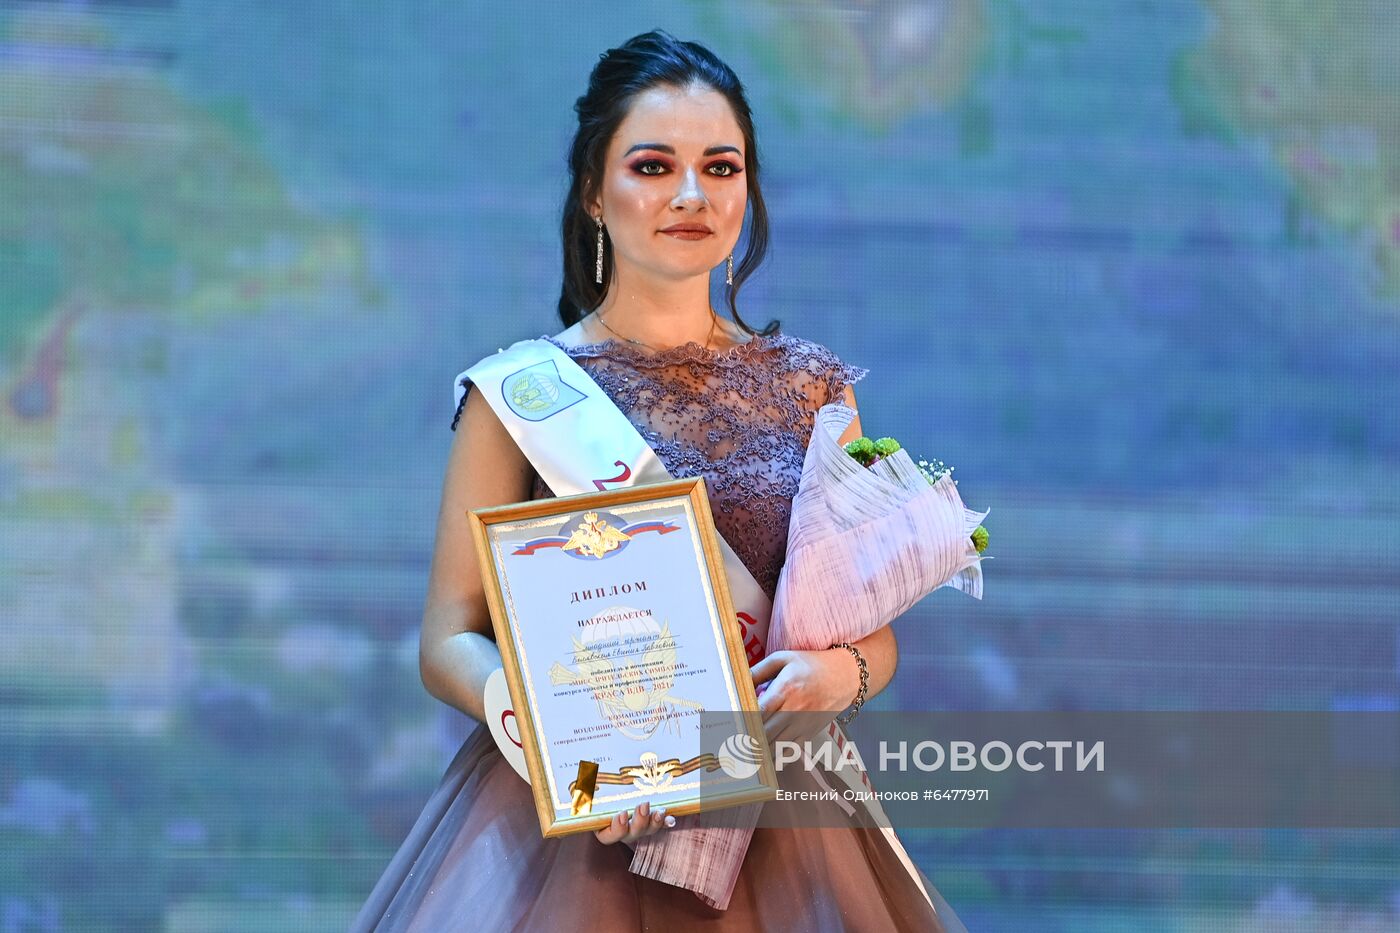 Финал конкурса красоты "Краса ВДВ-2021" 